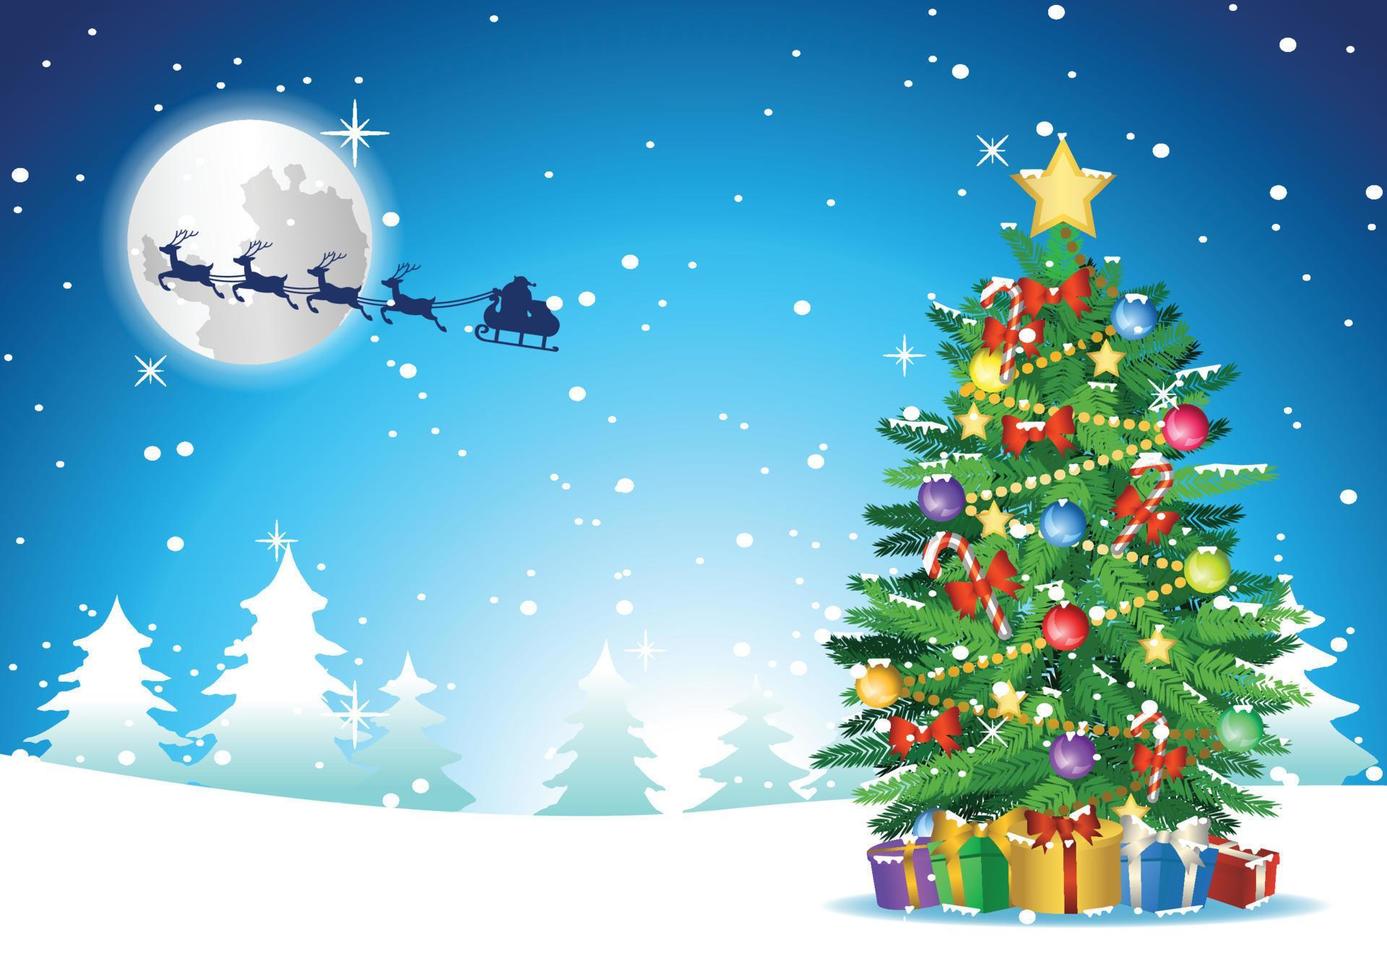 julgran står i snö i närheten present som skickas av jultomten som flyger iväg på julafton vektor